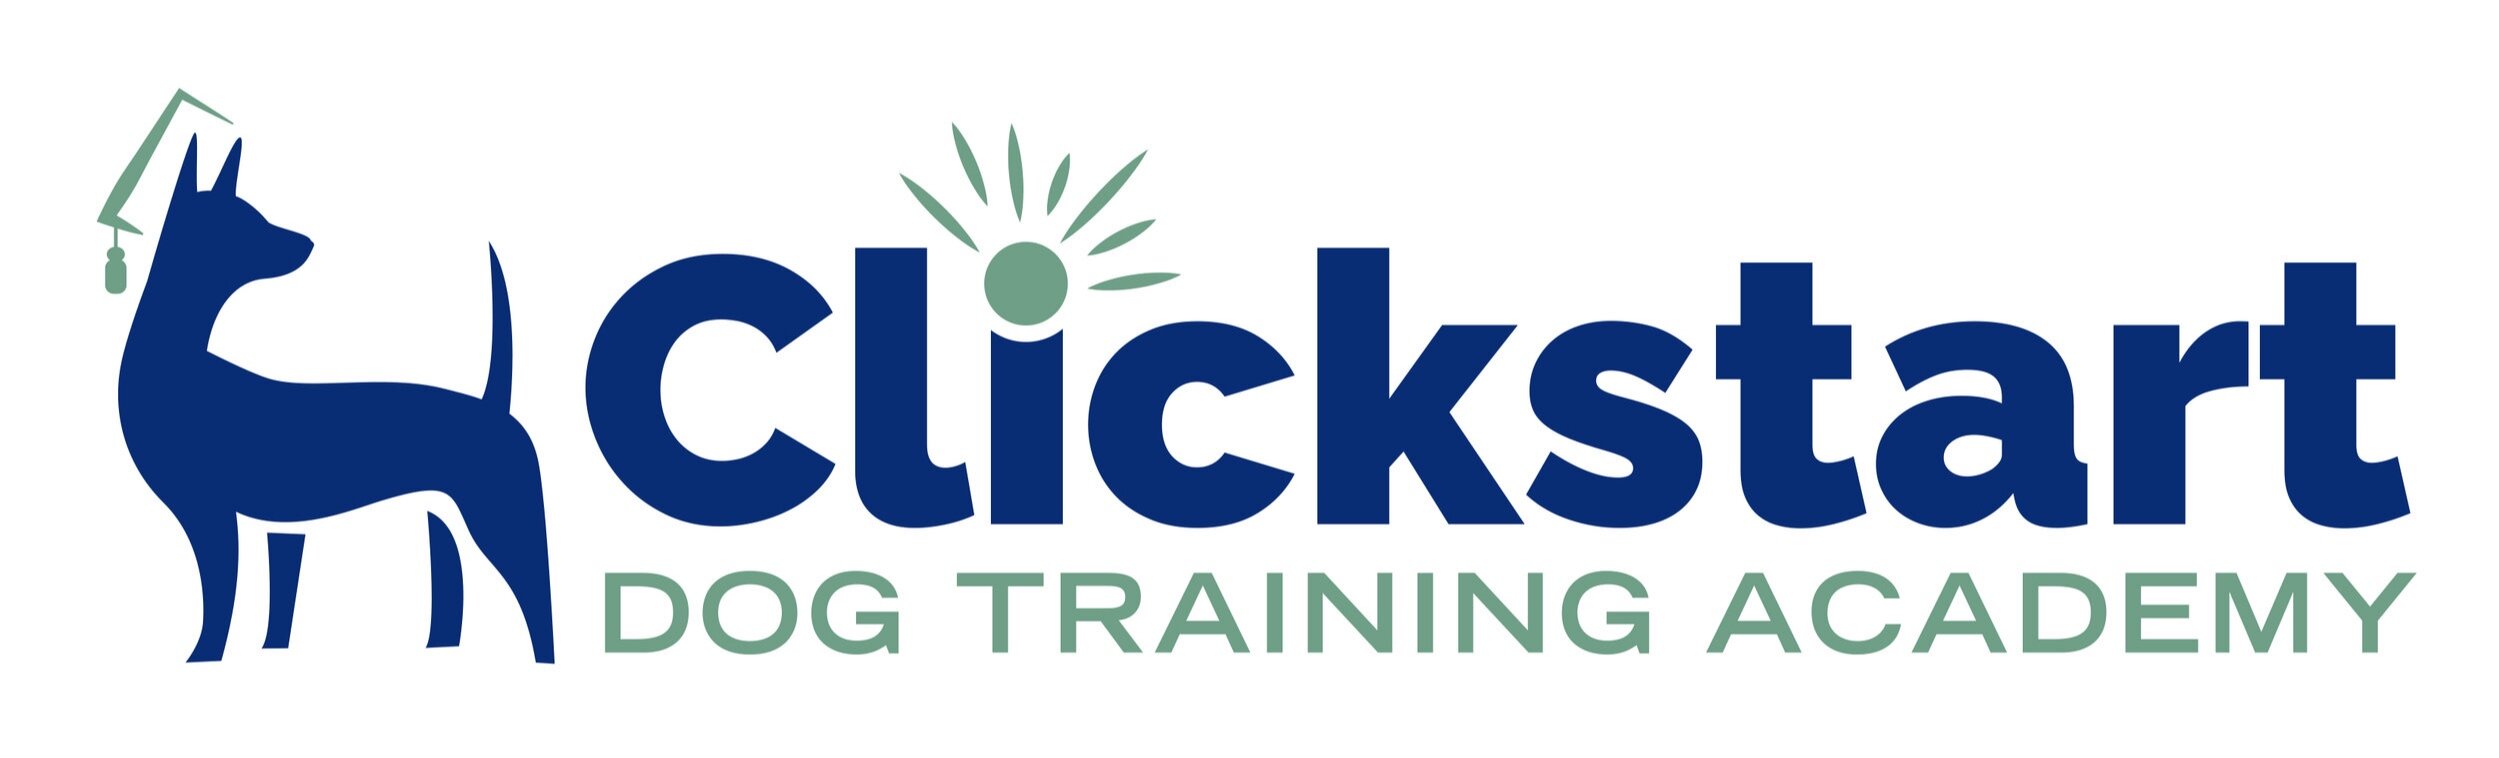 Clickstart Dog Training